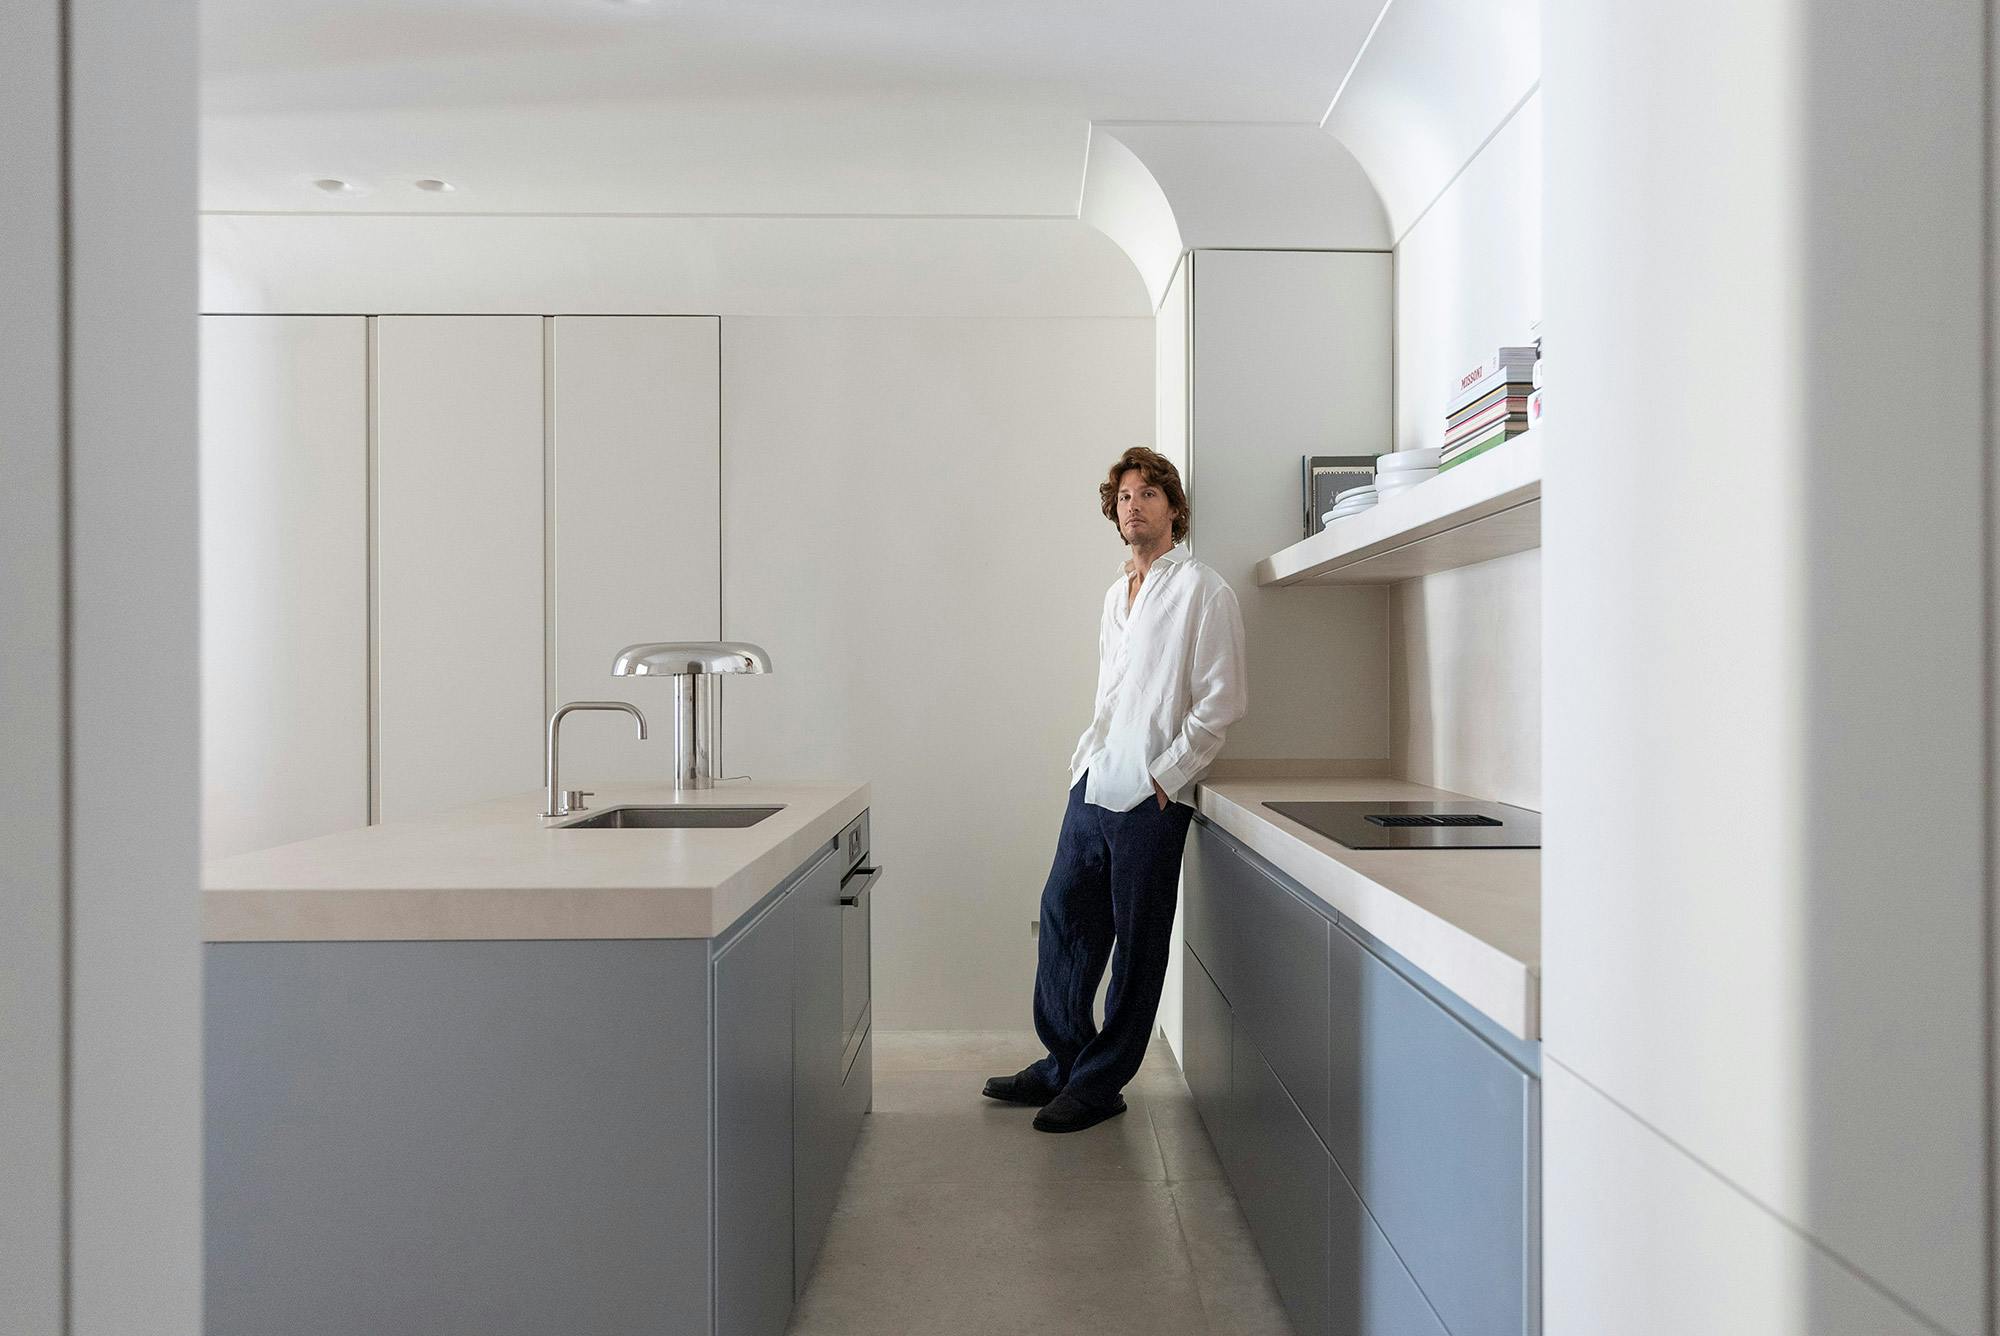 Numero immagine 45 della sezione corrente di Dekton has found its way to the home of renowned architect and designer Nikki Butenschön di Cosentino Italia